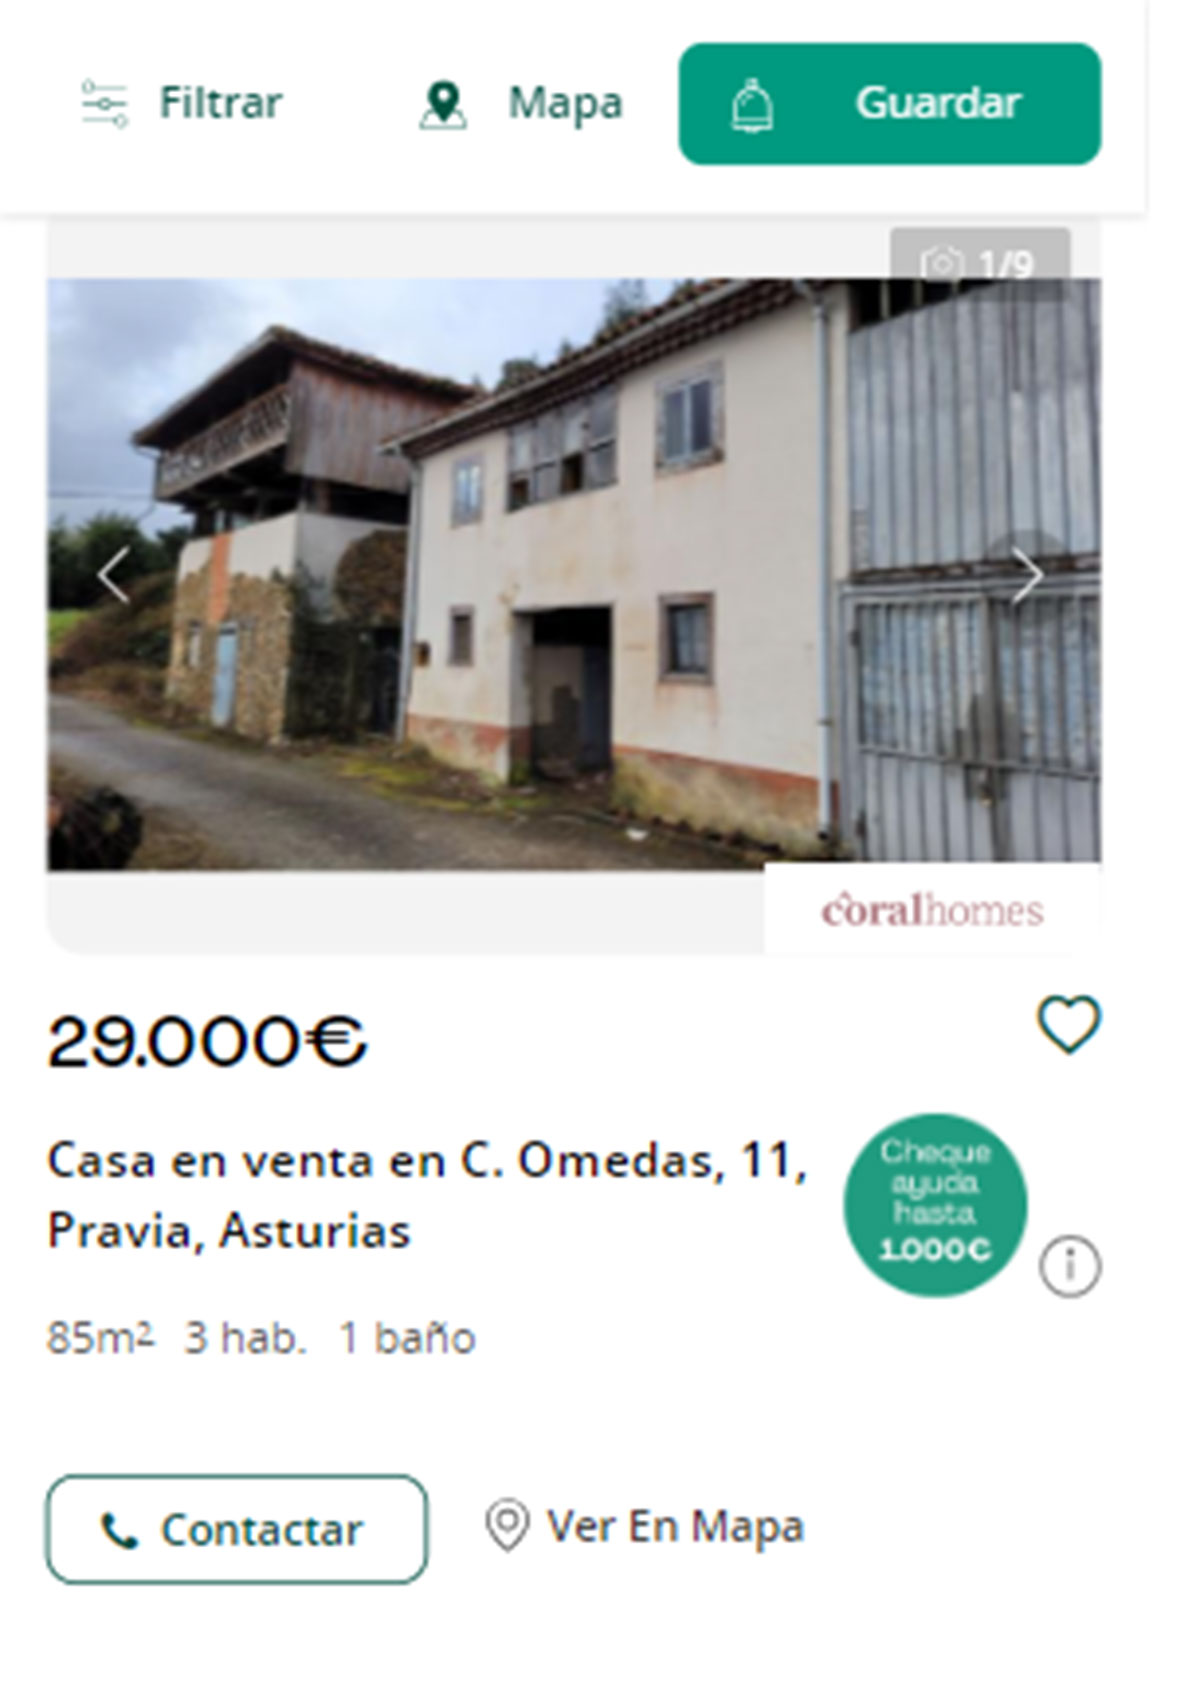 Piso en Asturias por 29.000 euros